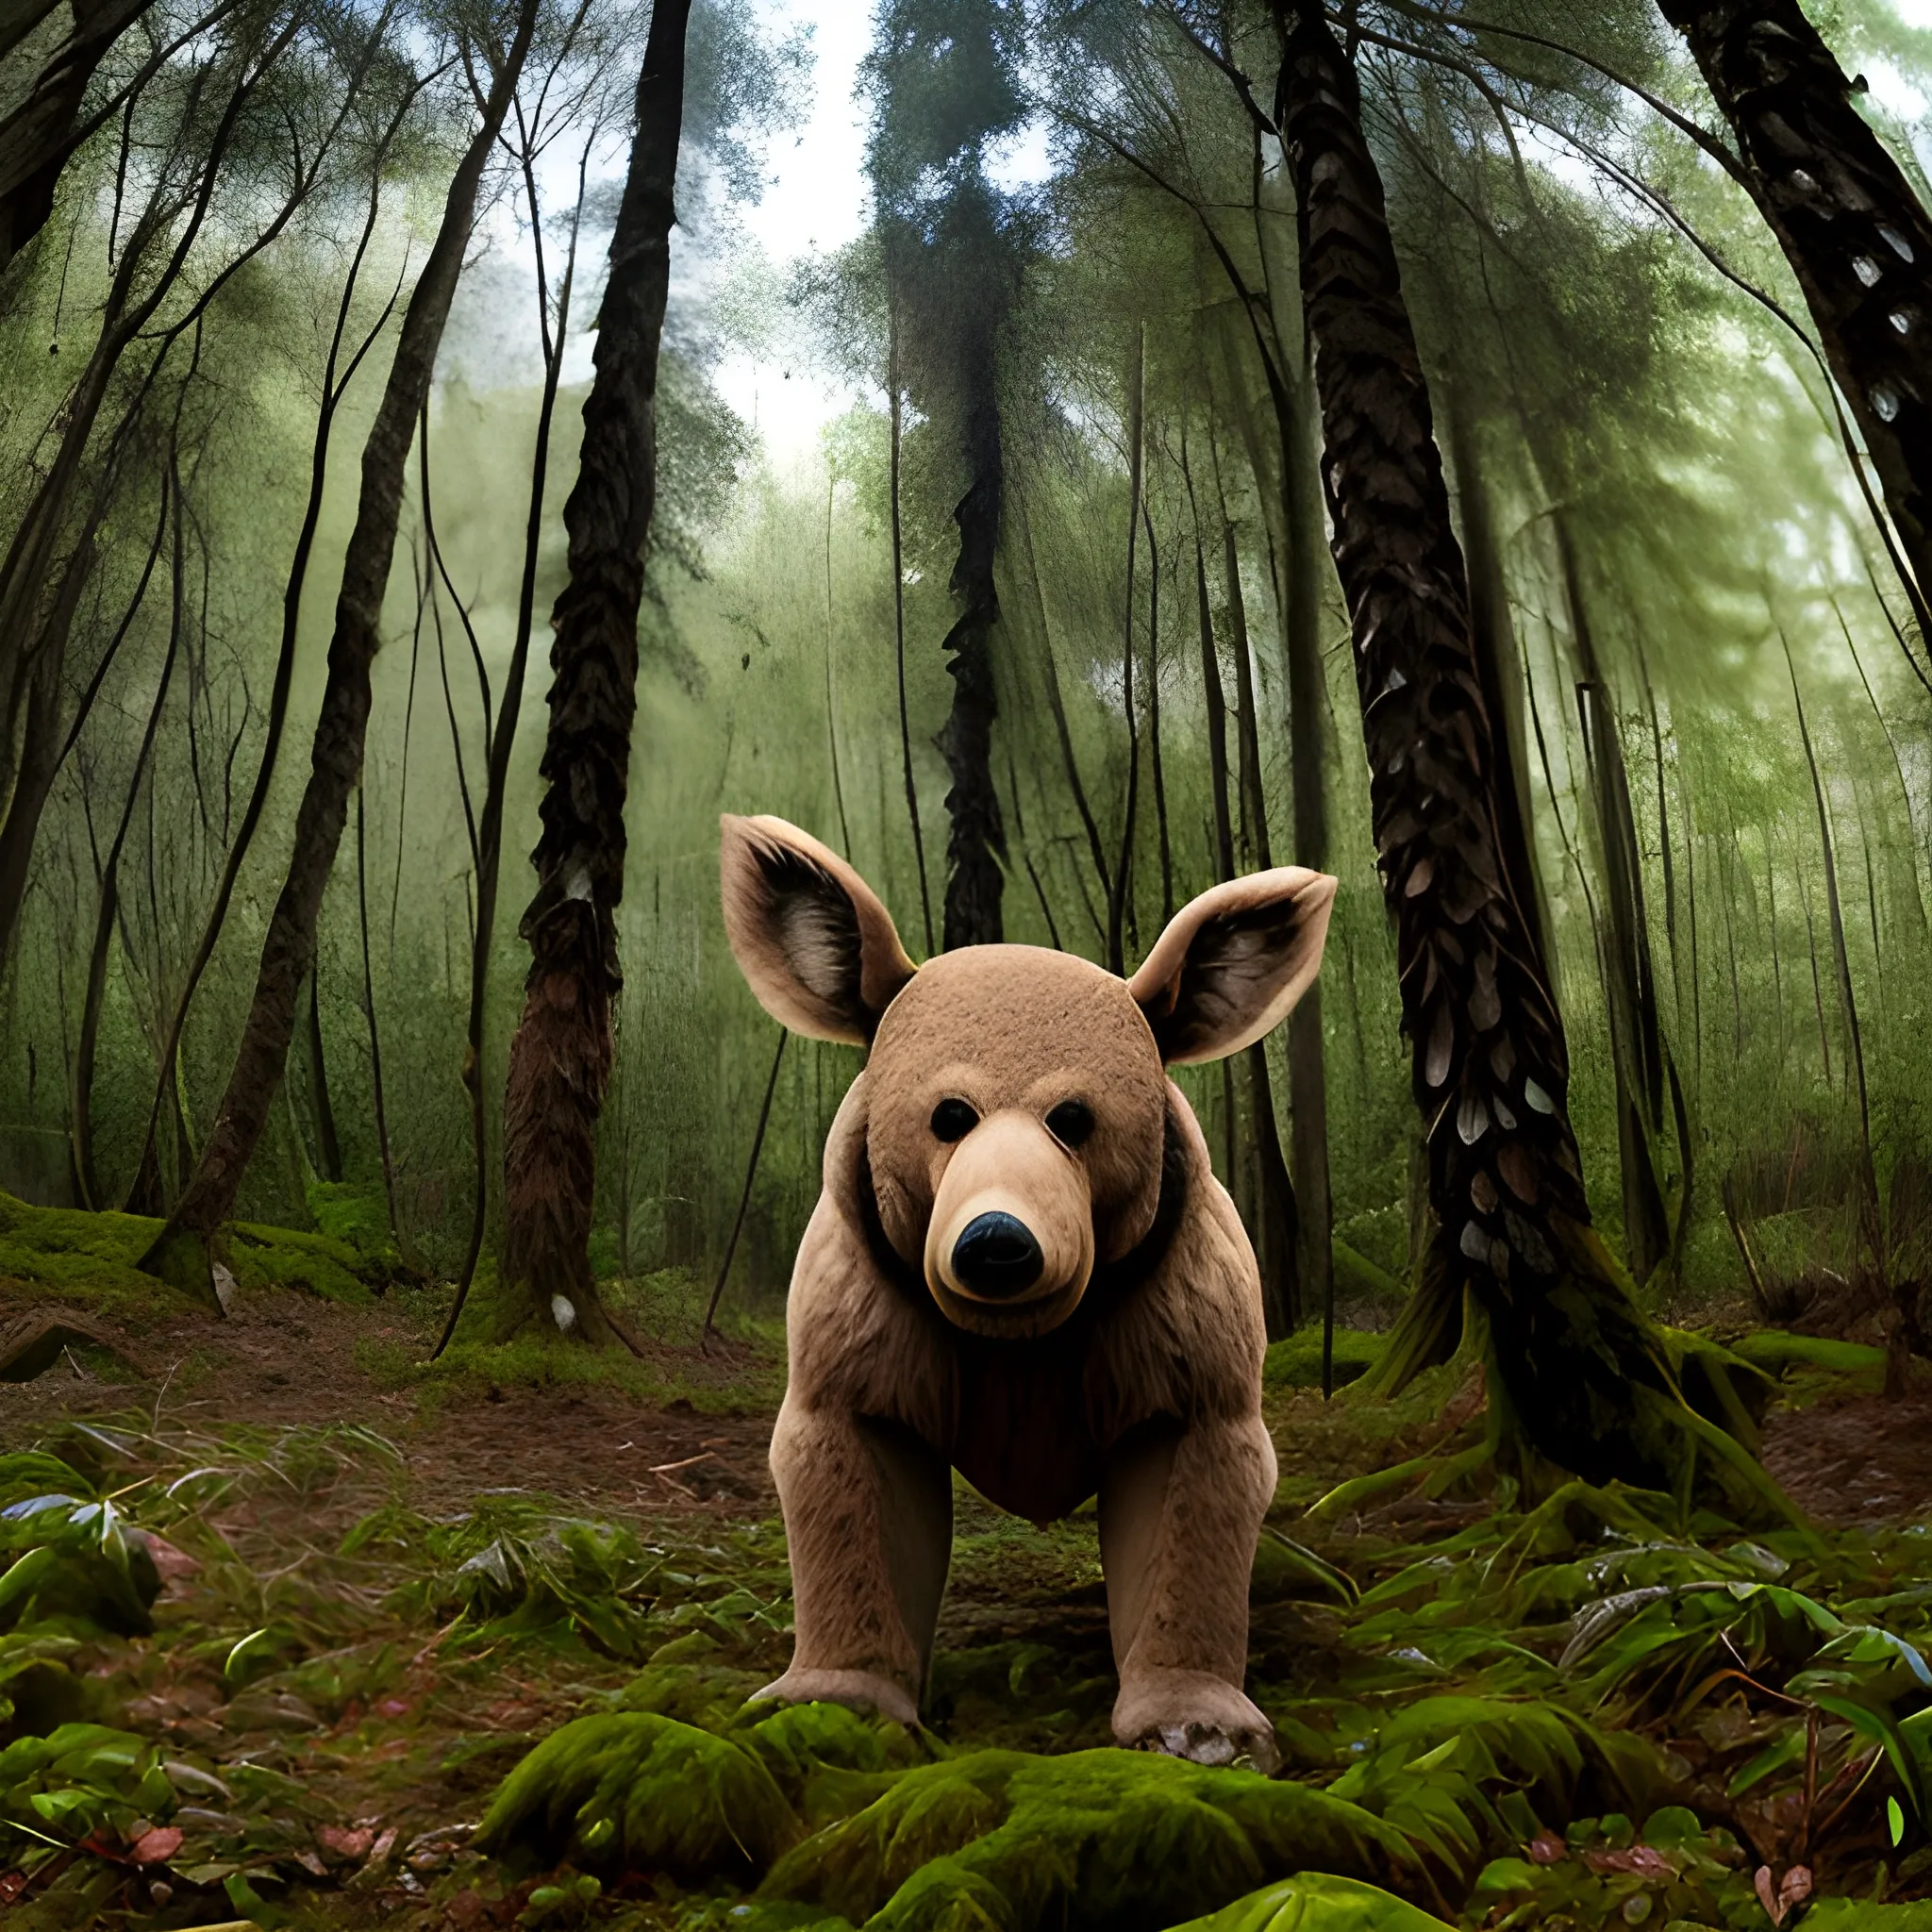 oso en un bosque con troncos altos, llenos de ojos